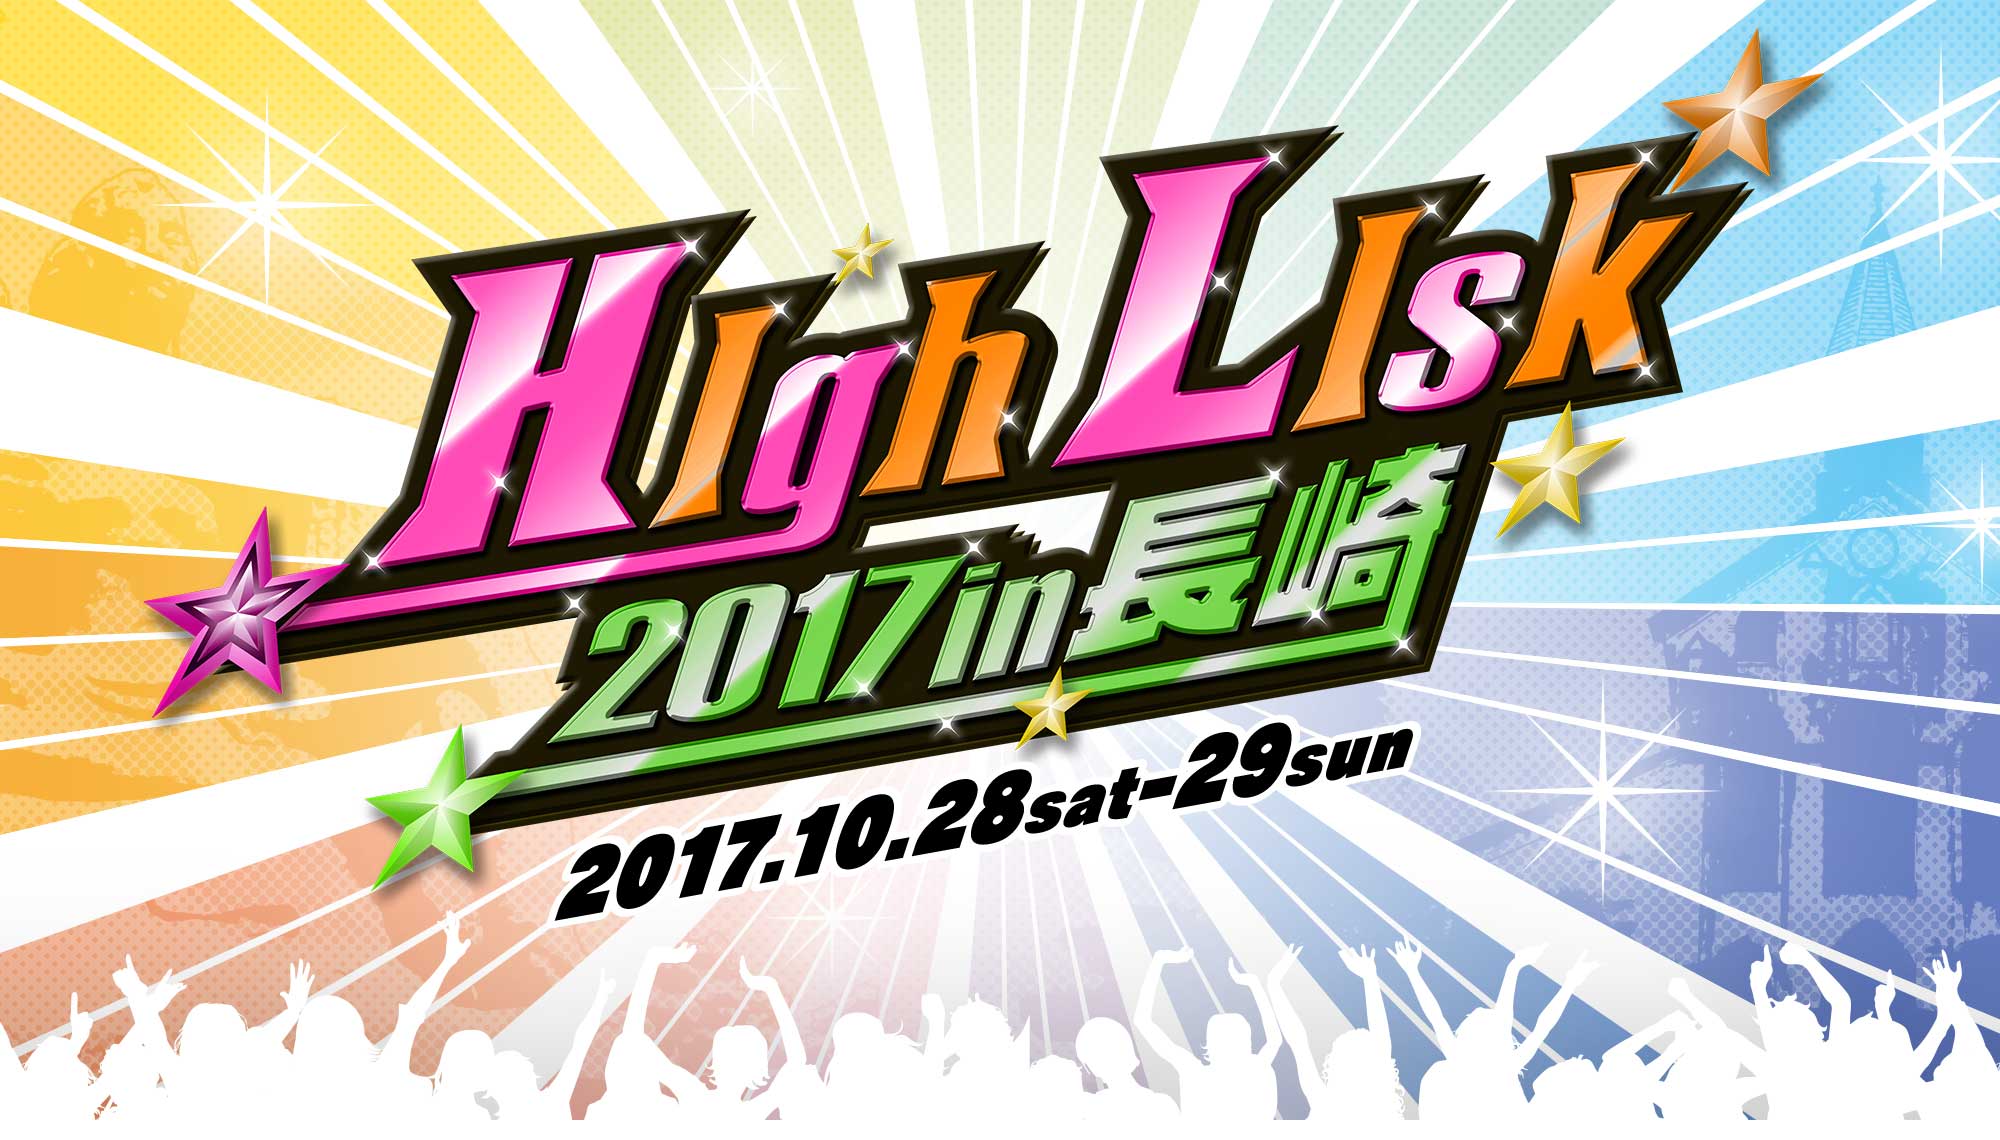 HighLisk2017 in 長崎